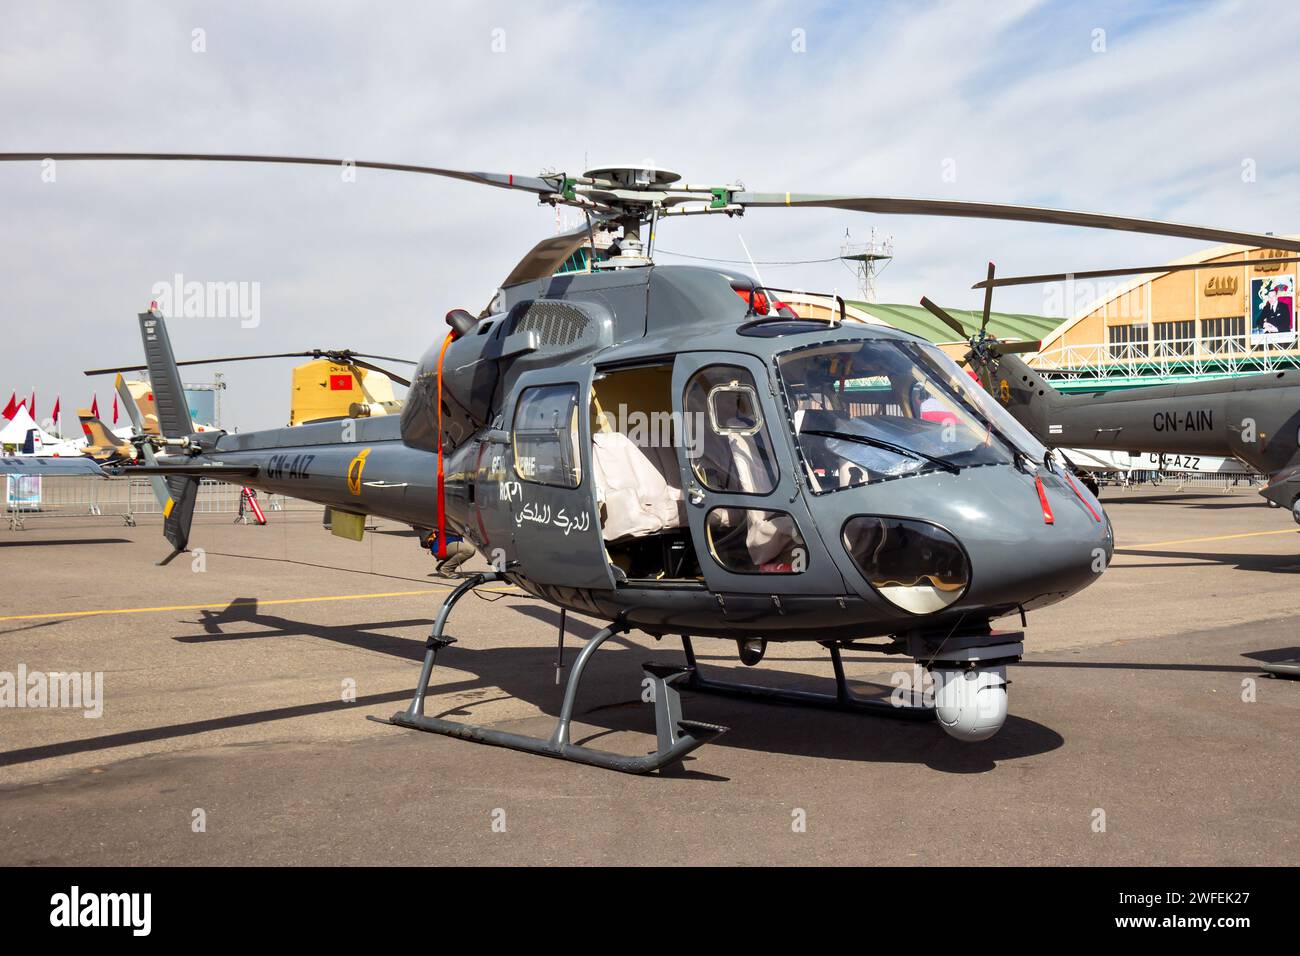 Royal Maroccan Gendarmerie (polizia) elicottero AS355F Ecureuil all'Expo dell'aviazione di Marrakech. Marrakesh, Marocco - 28 aprile 2016 Foto Stock